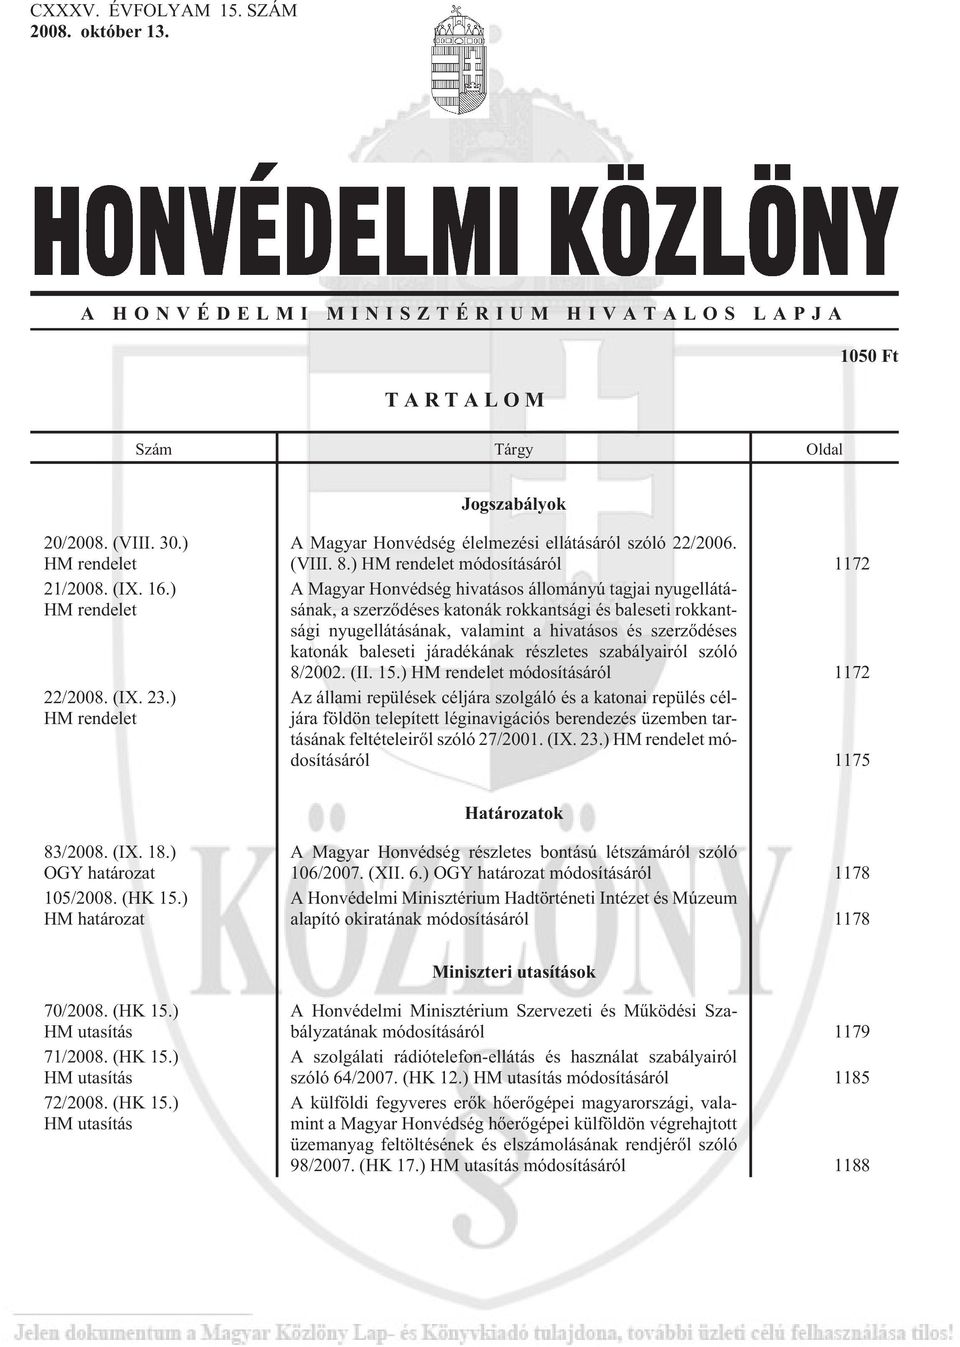 ) HM rendelet módosításáról 1172 A Magyar Honvédség hivatásos állományú tagjai nyugellátásának, a szerzõdéses katonák rokkantsági és baleseti rokkantsági nyugellátásának, valamint a hivatásos és